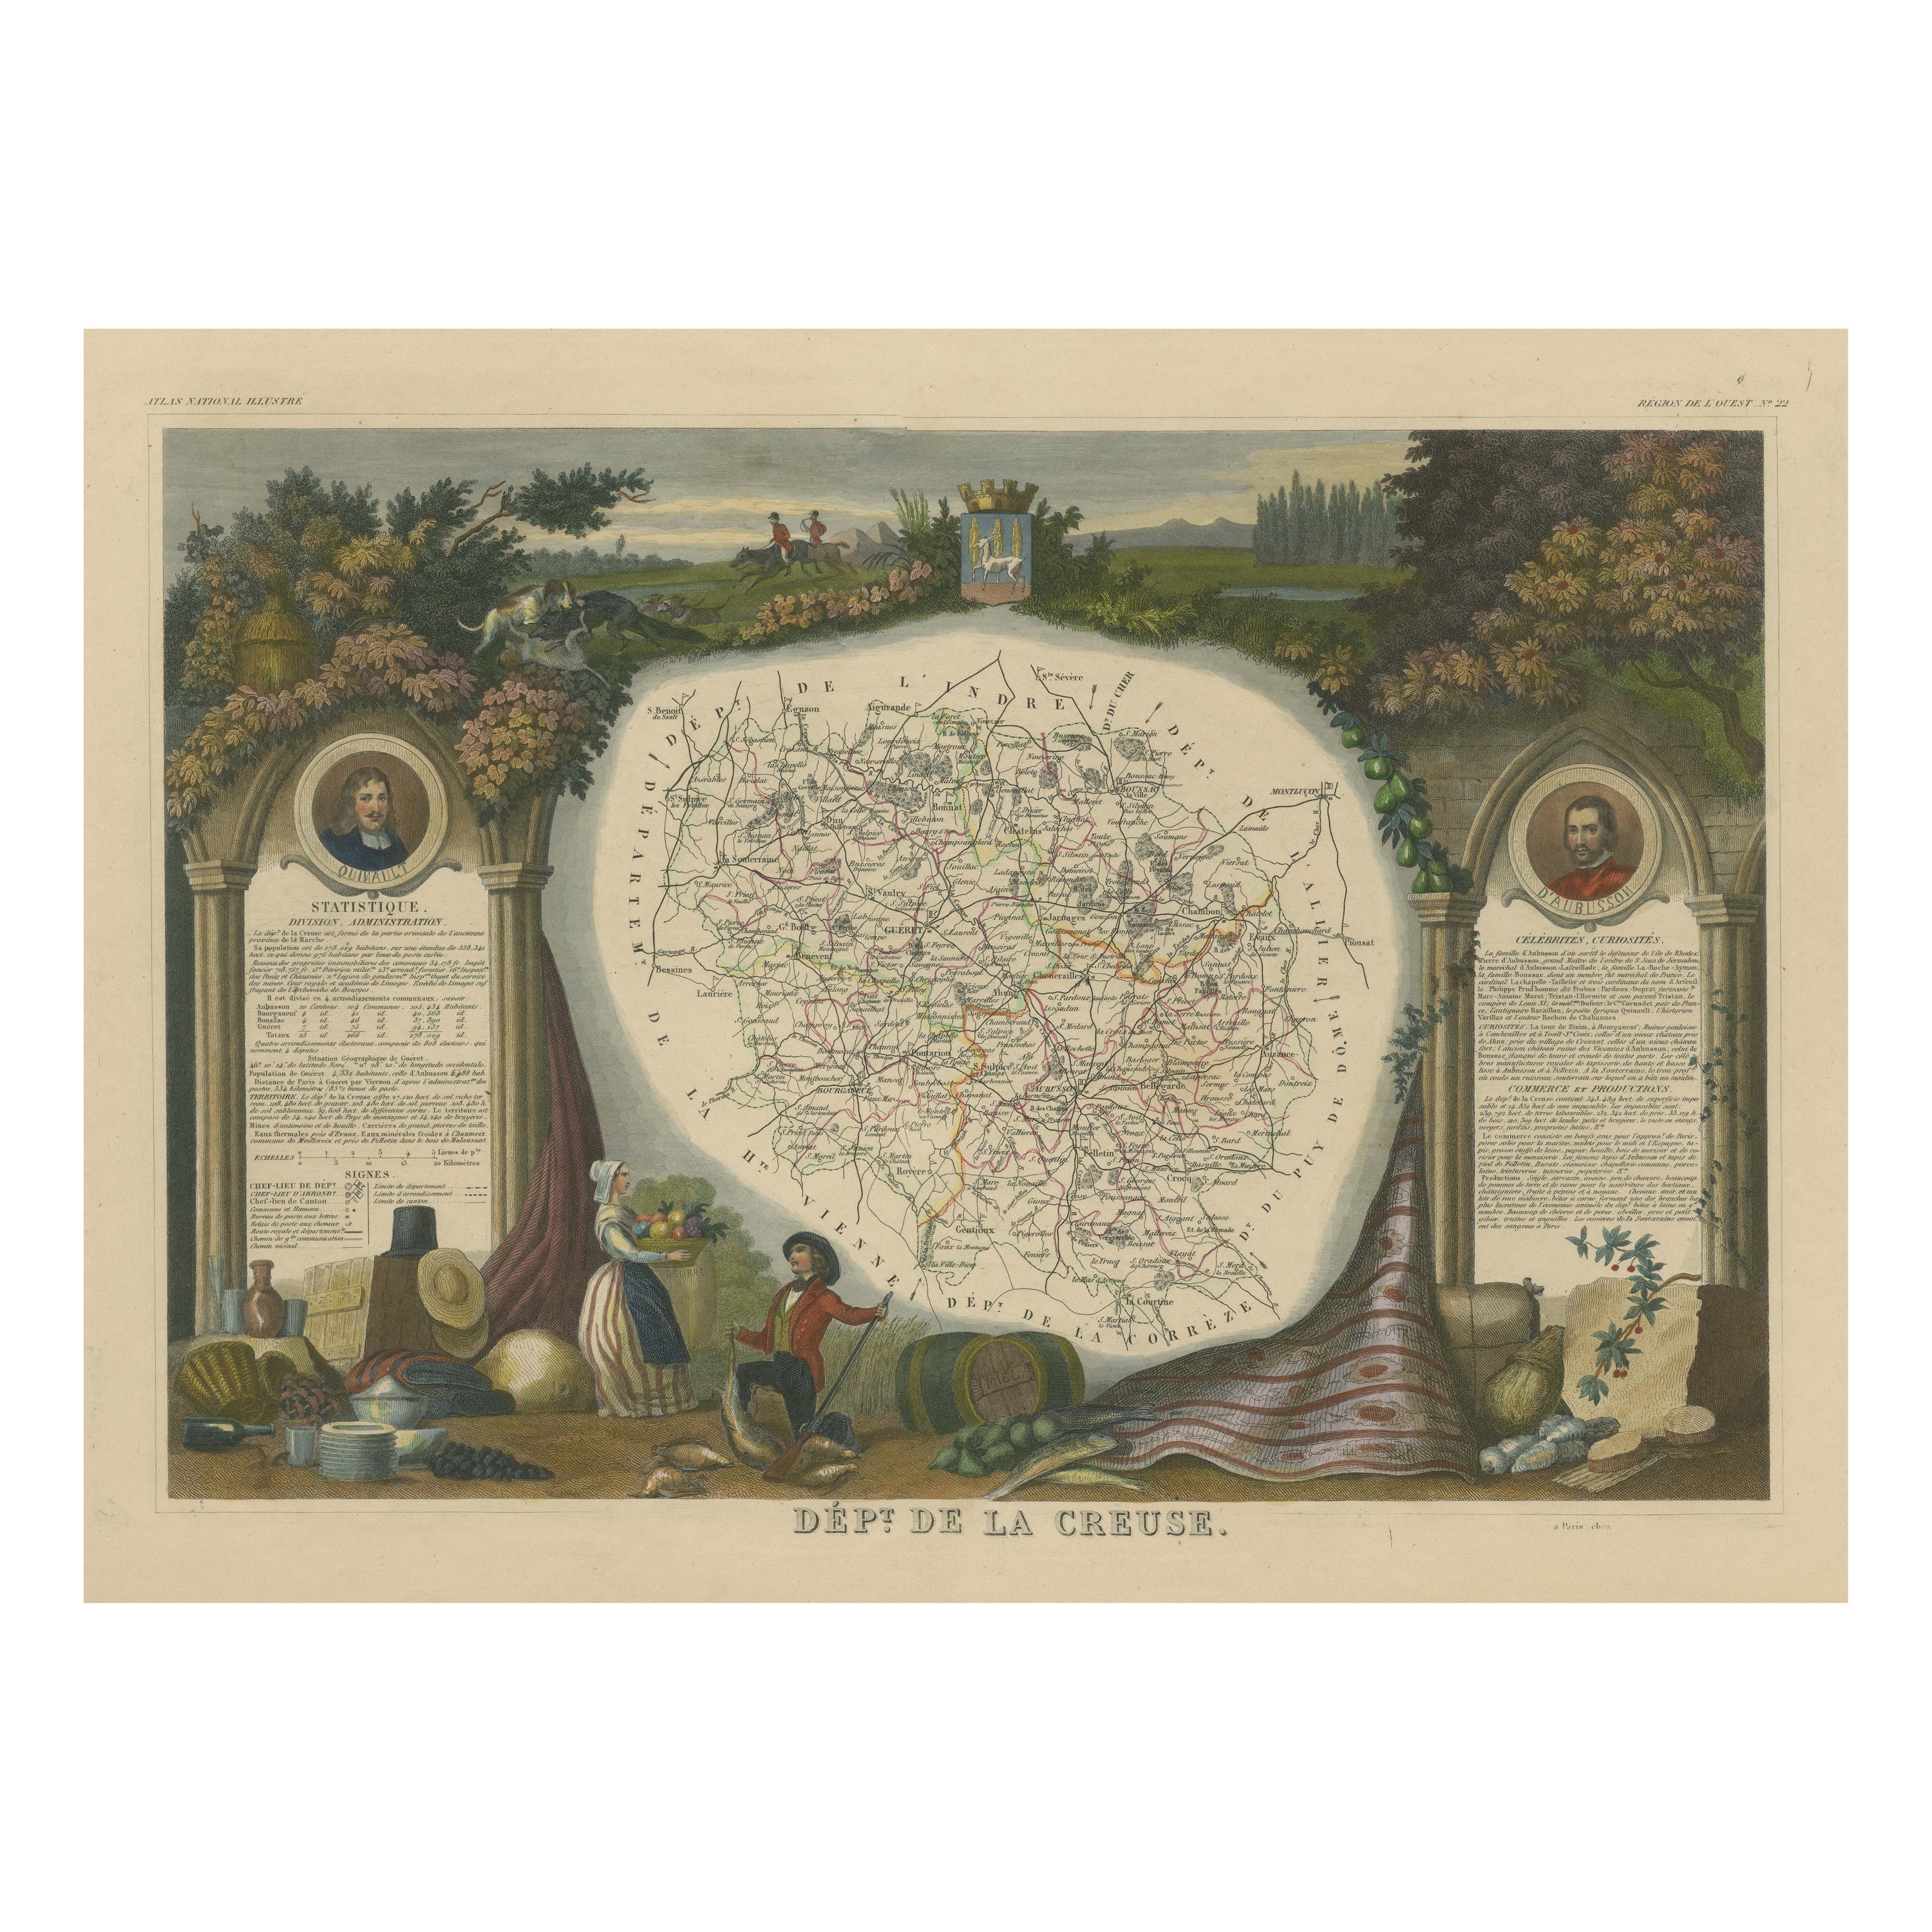 Carte ancienne colorée à la main du département de la Creuse, France